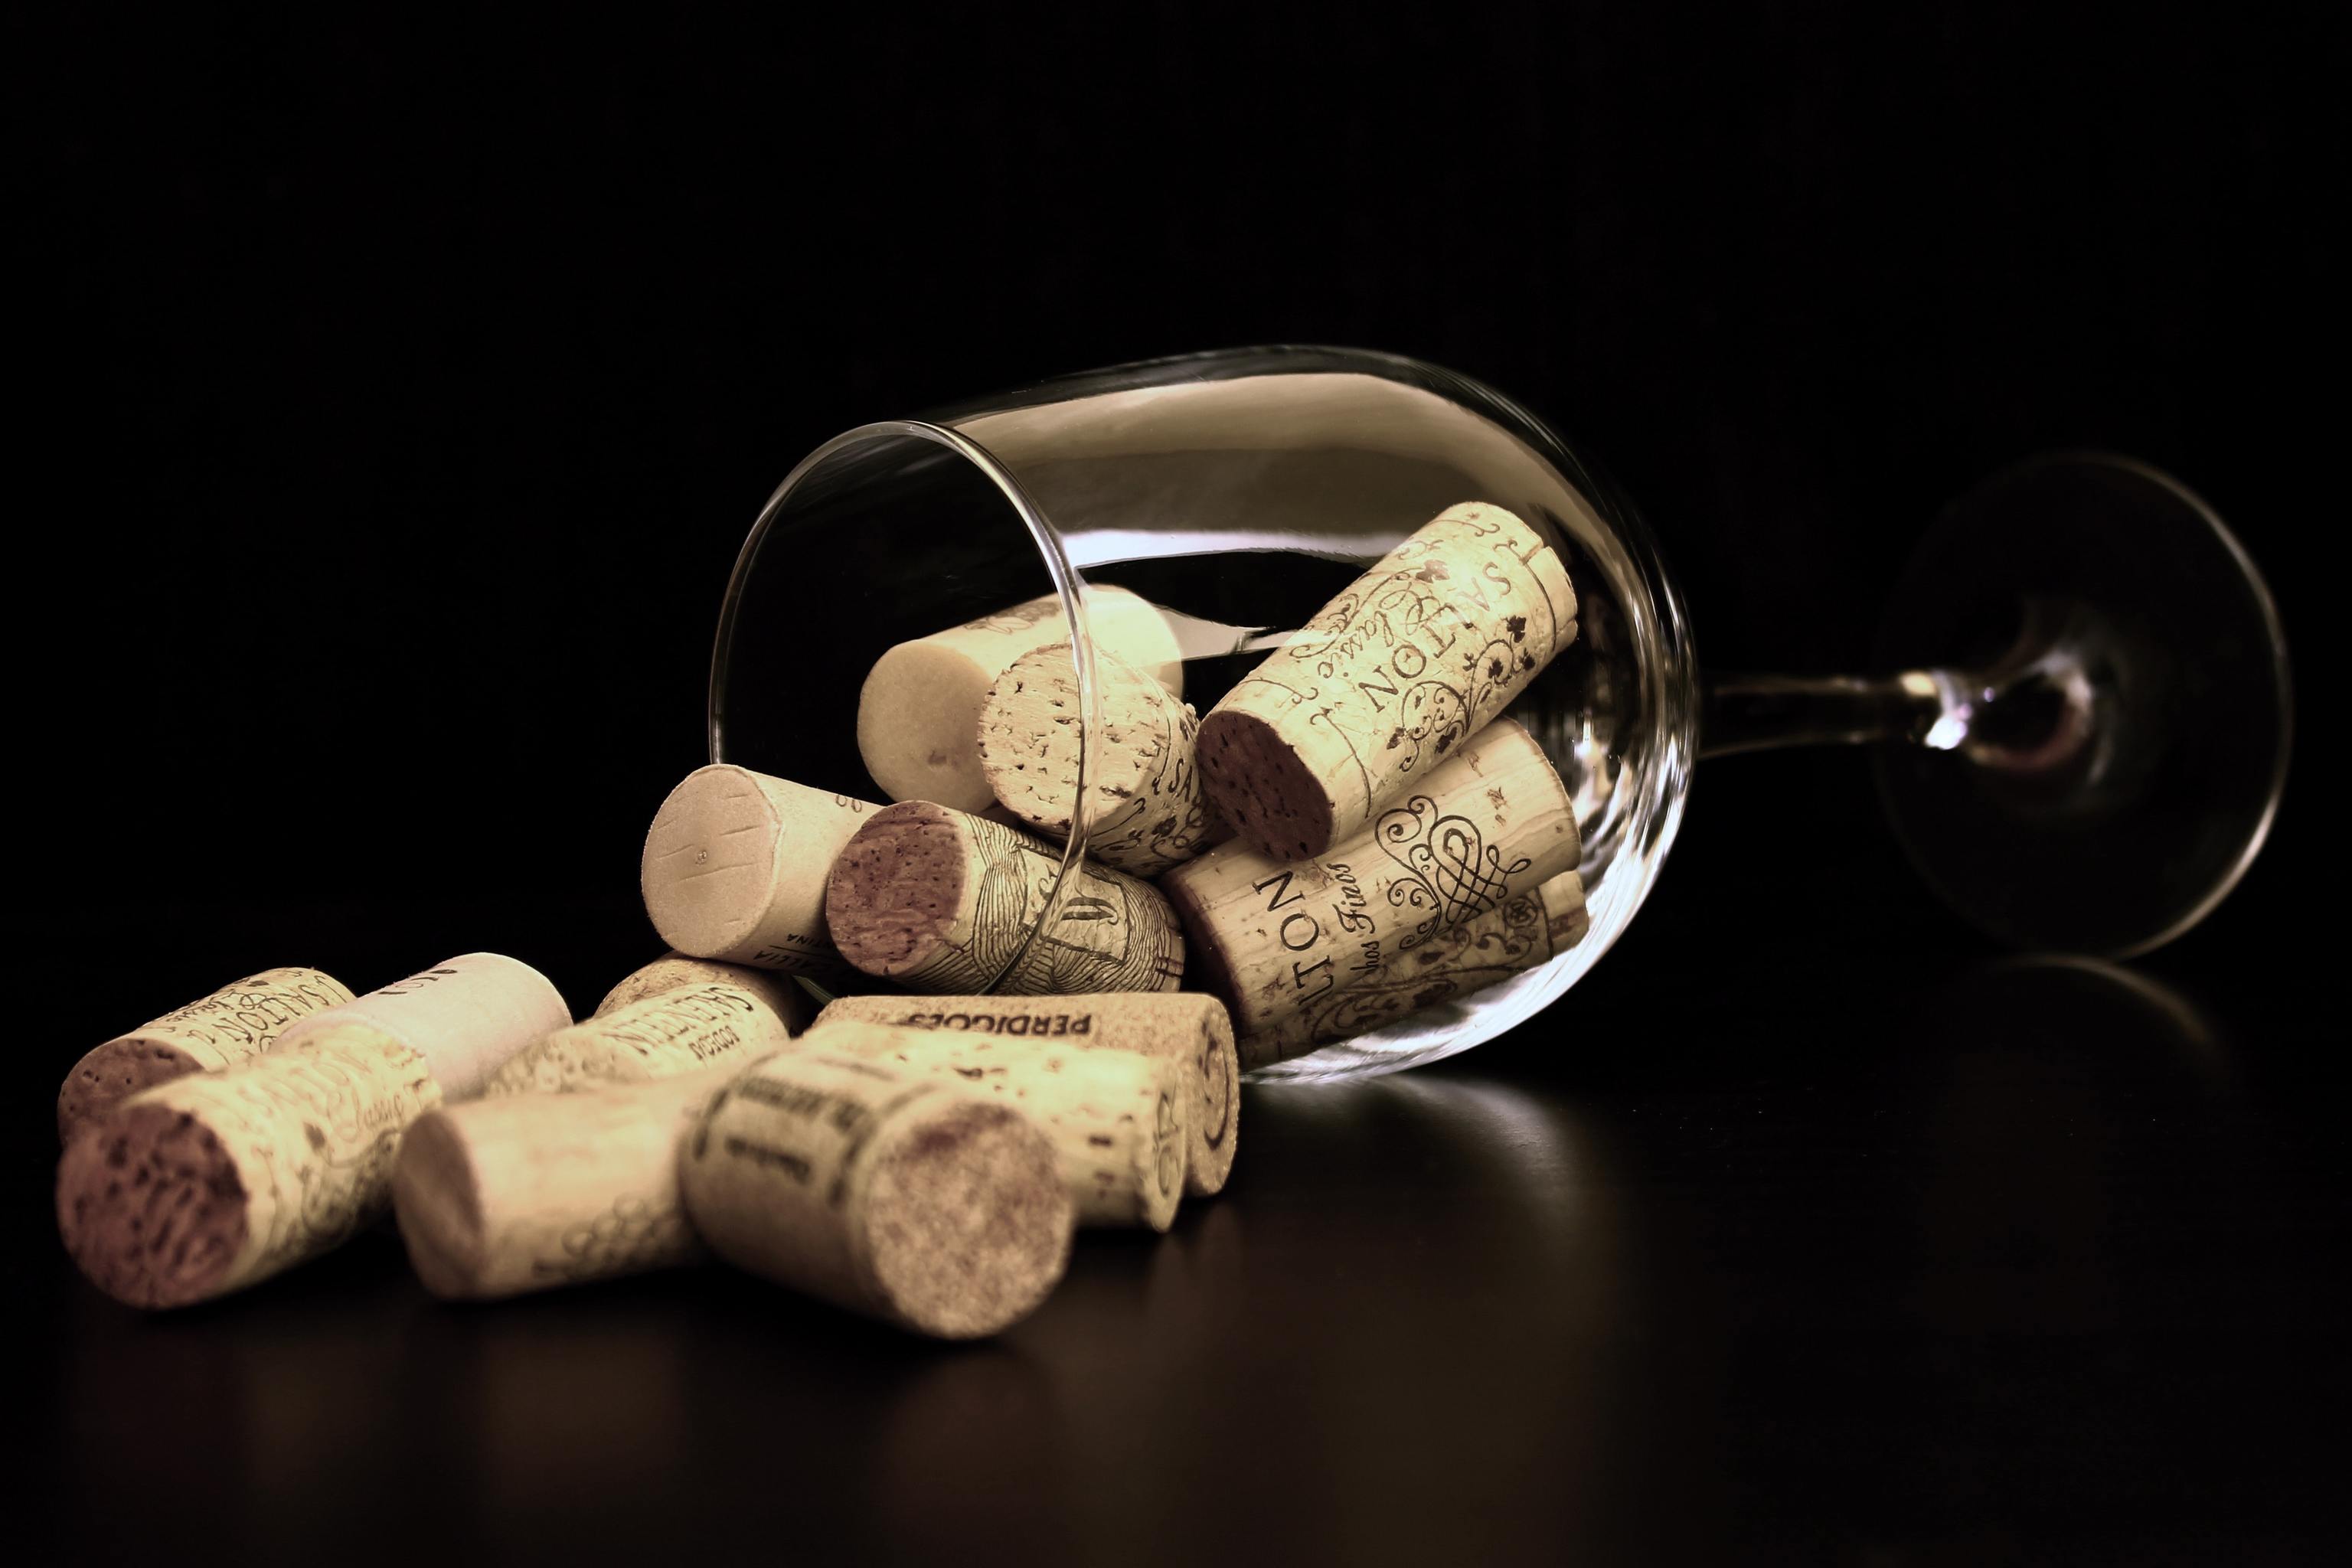 Sacacorchos Para Abrir Los Tapones De Botellas De Vino Sobre Fondo Blanco  Imagen de archivo - Imagen de tallado, primer: 213299957